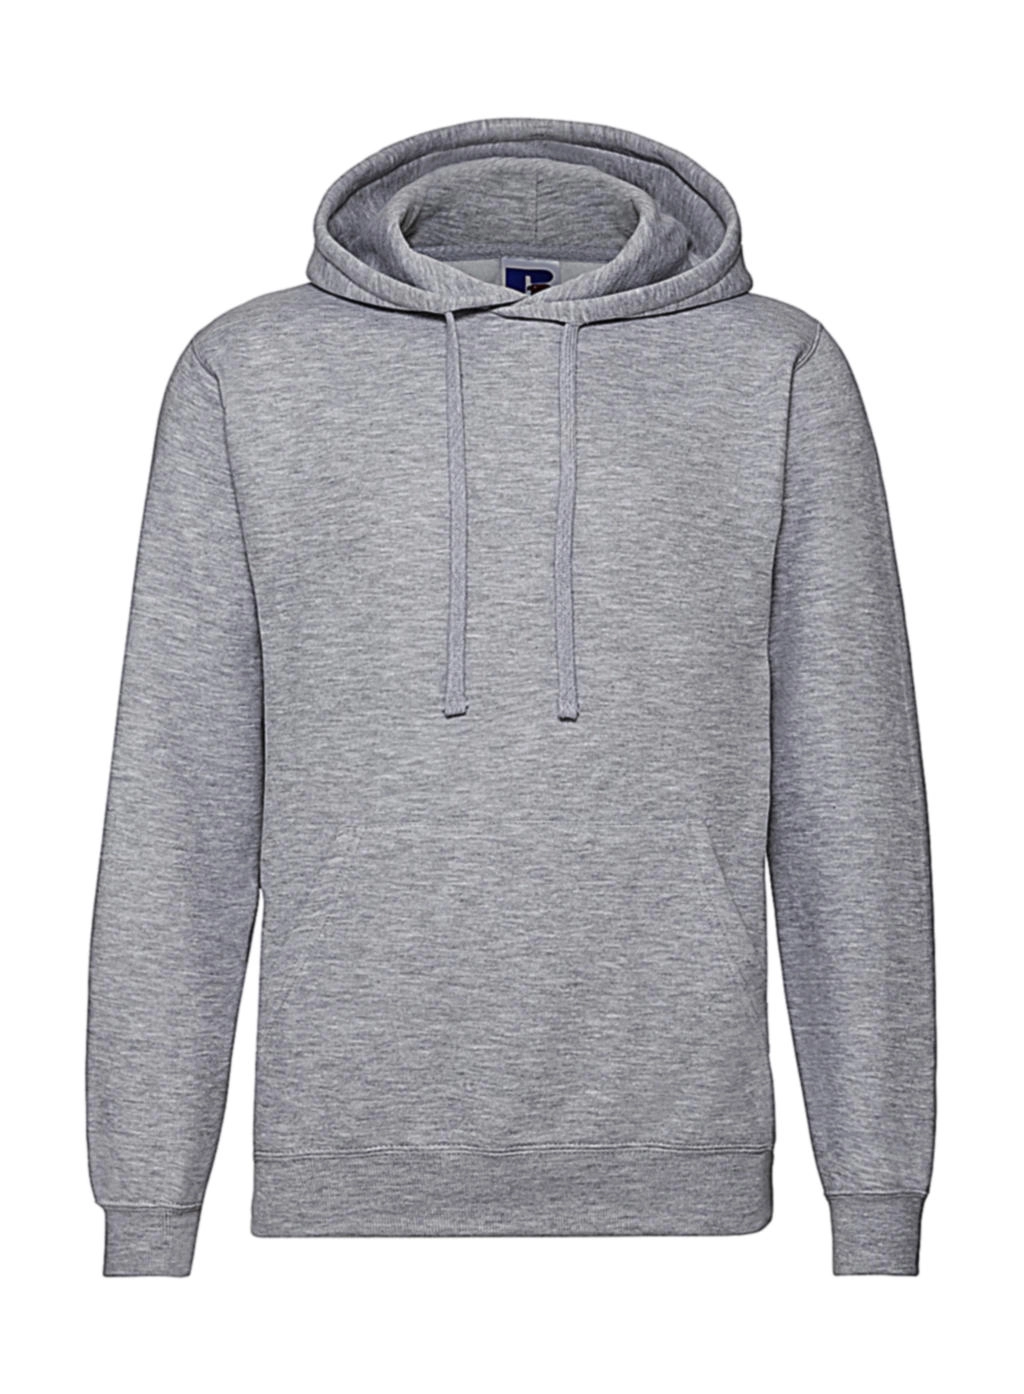 Hooded Sweatshirt zum Besticken und Bedrucken in der Farbe Light Oxford mit Ihren Logo, Schriftzug oder Motiv.